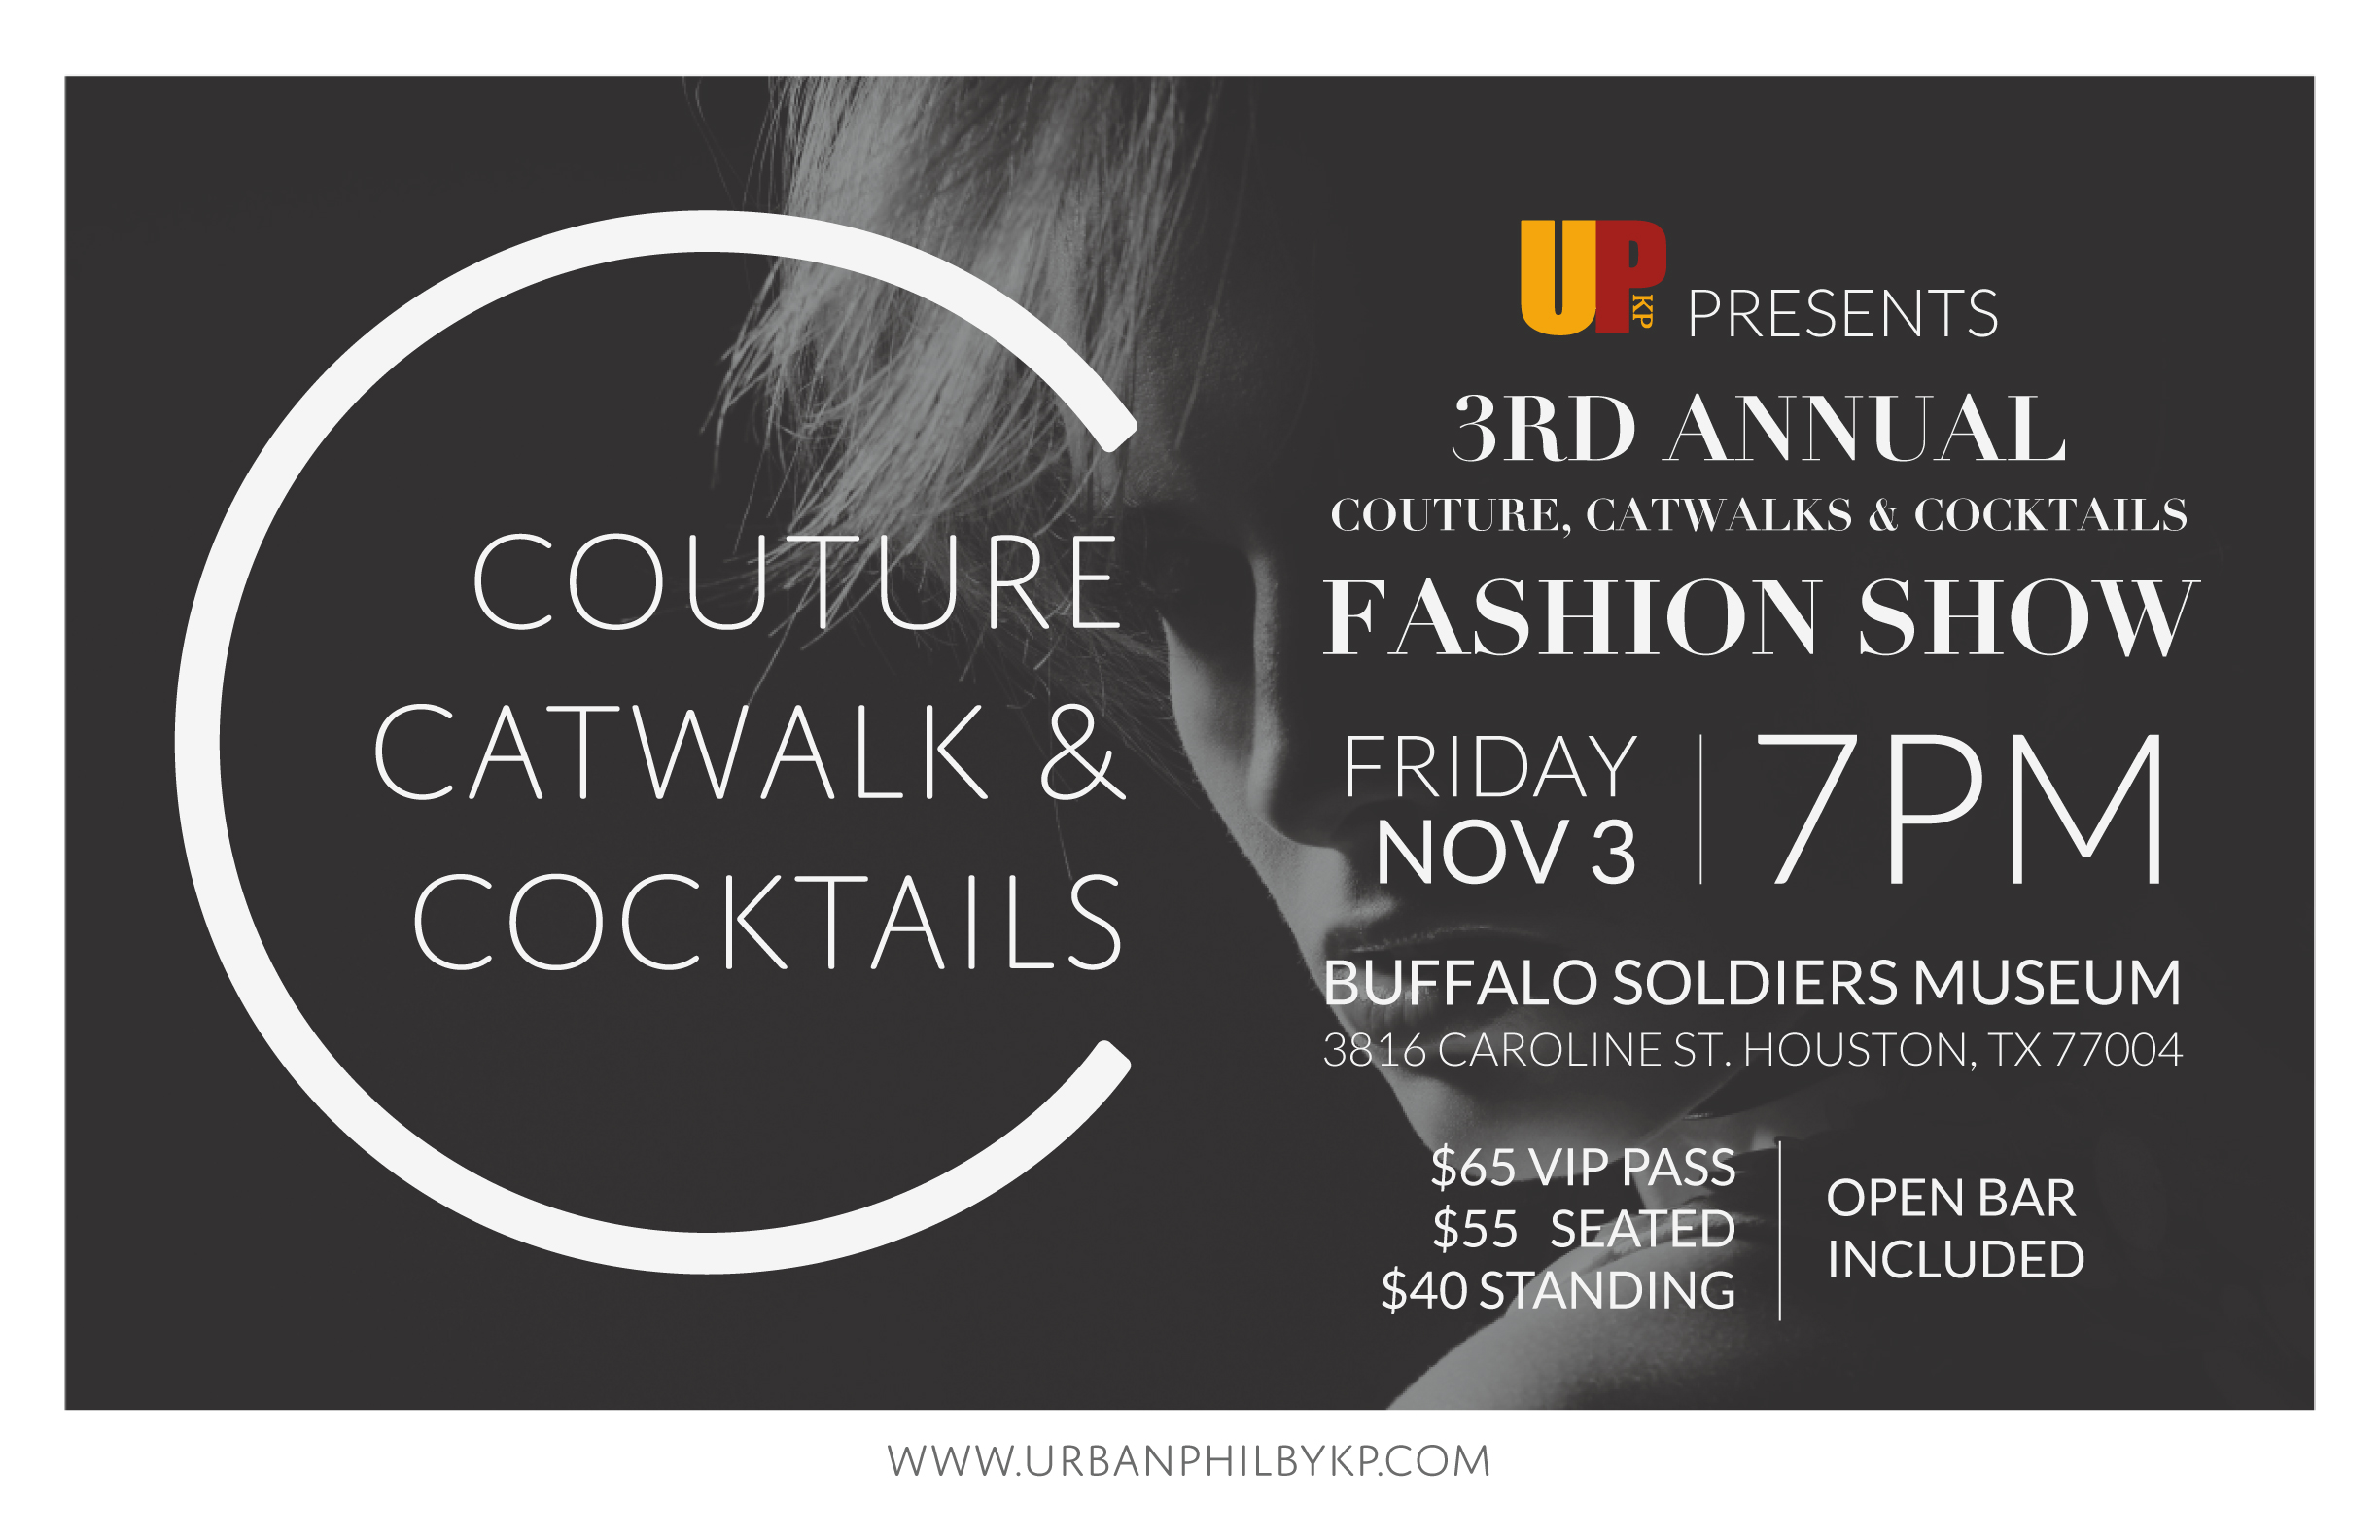 Couture Catwalk & Cocktails Fashion Show